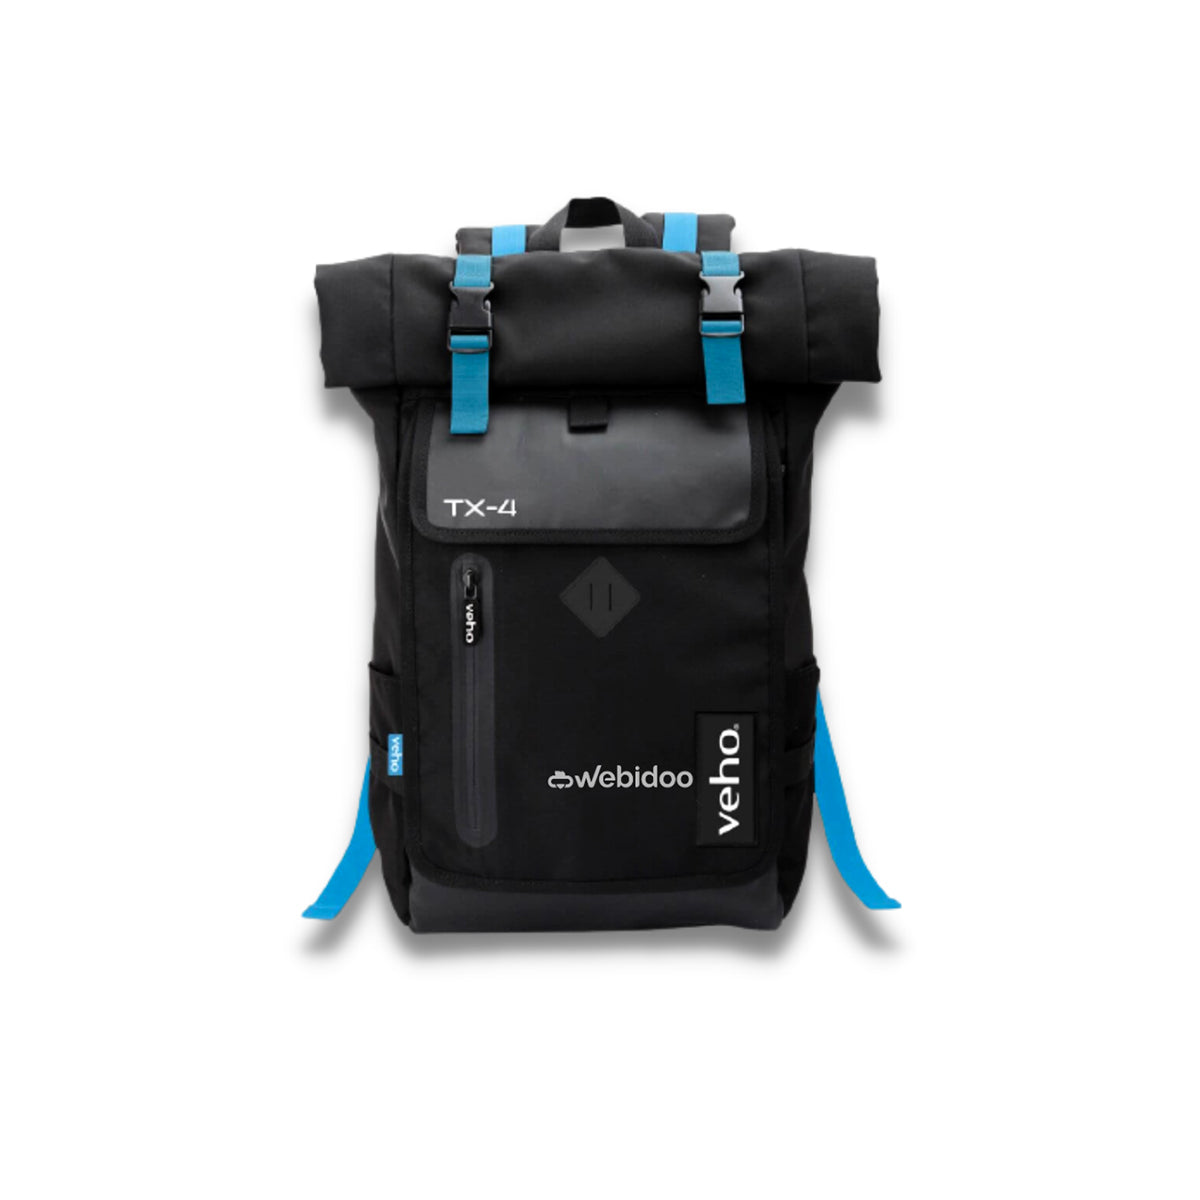 Veho TX-4 Backpack Notebook Bag Logo Webidoo